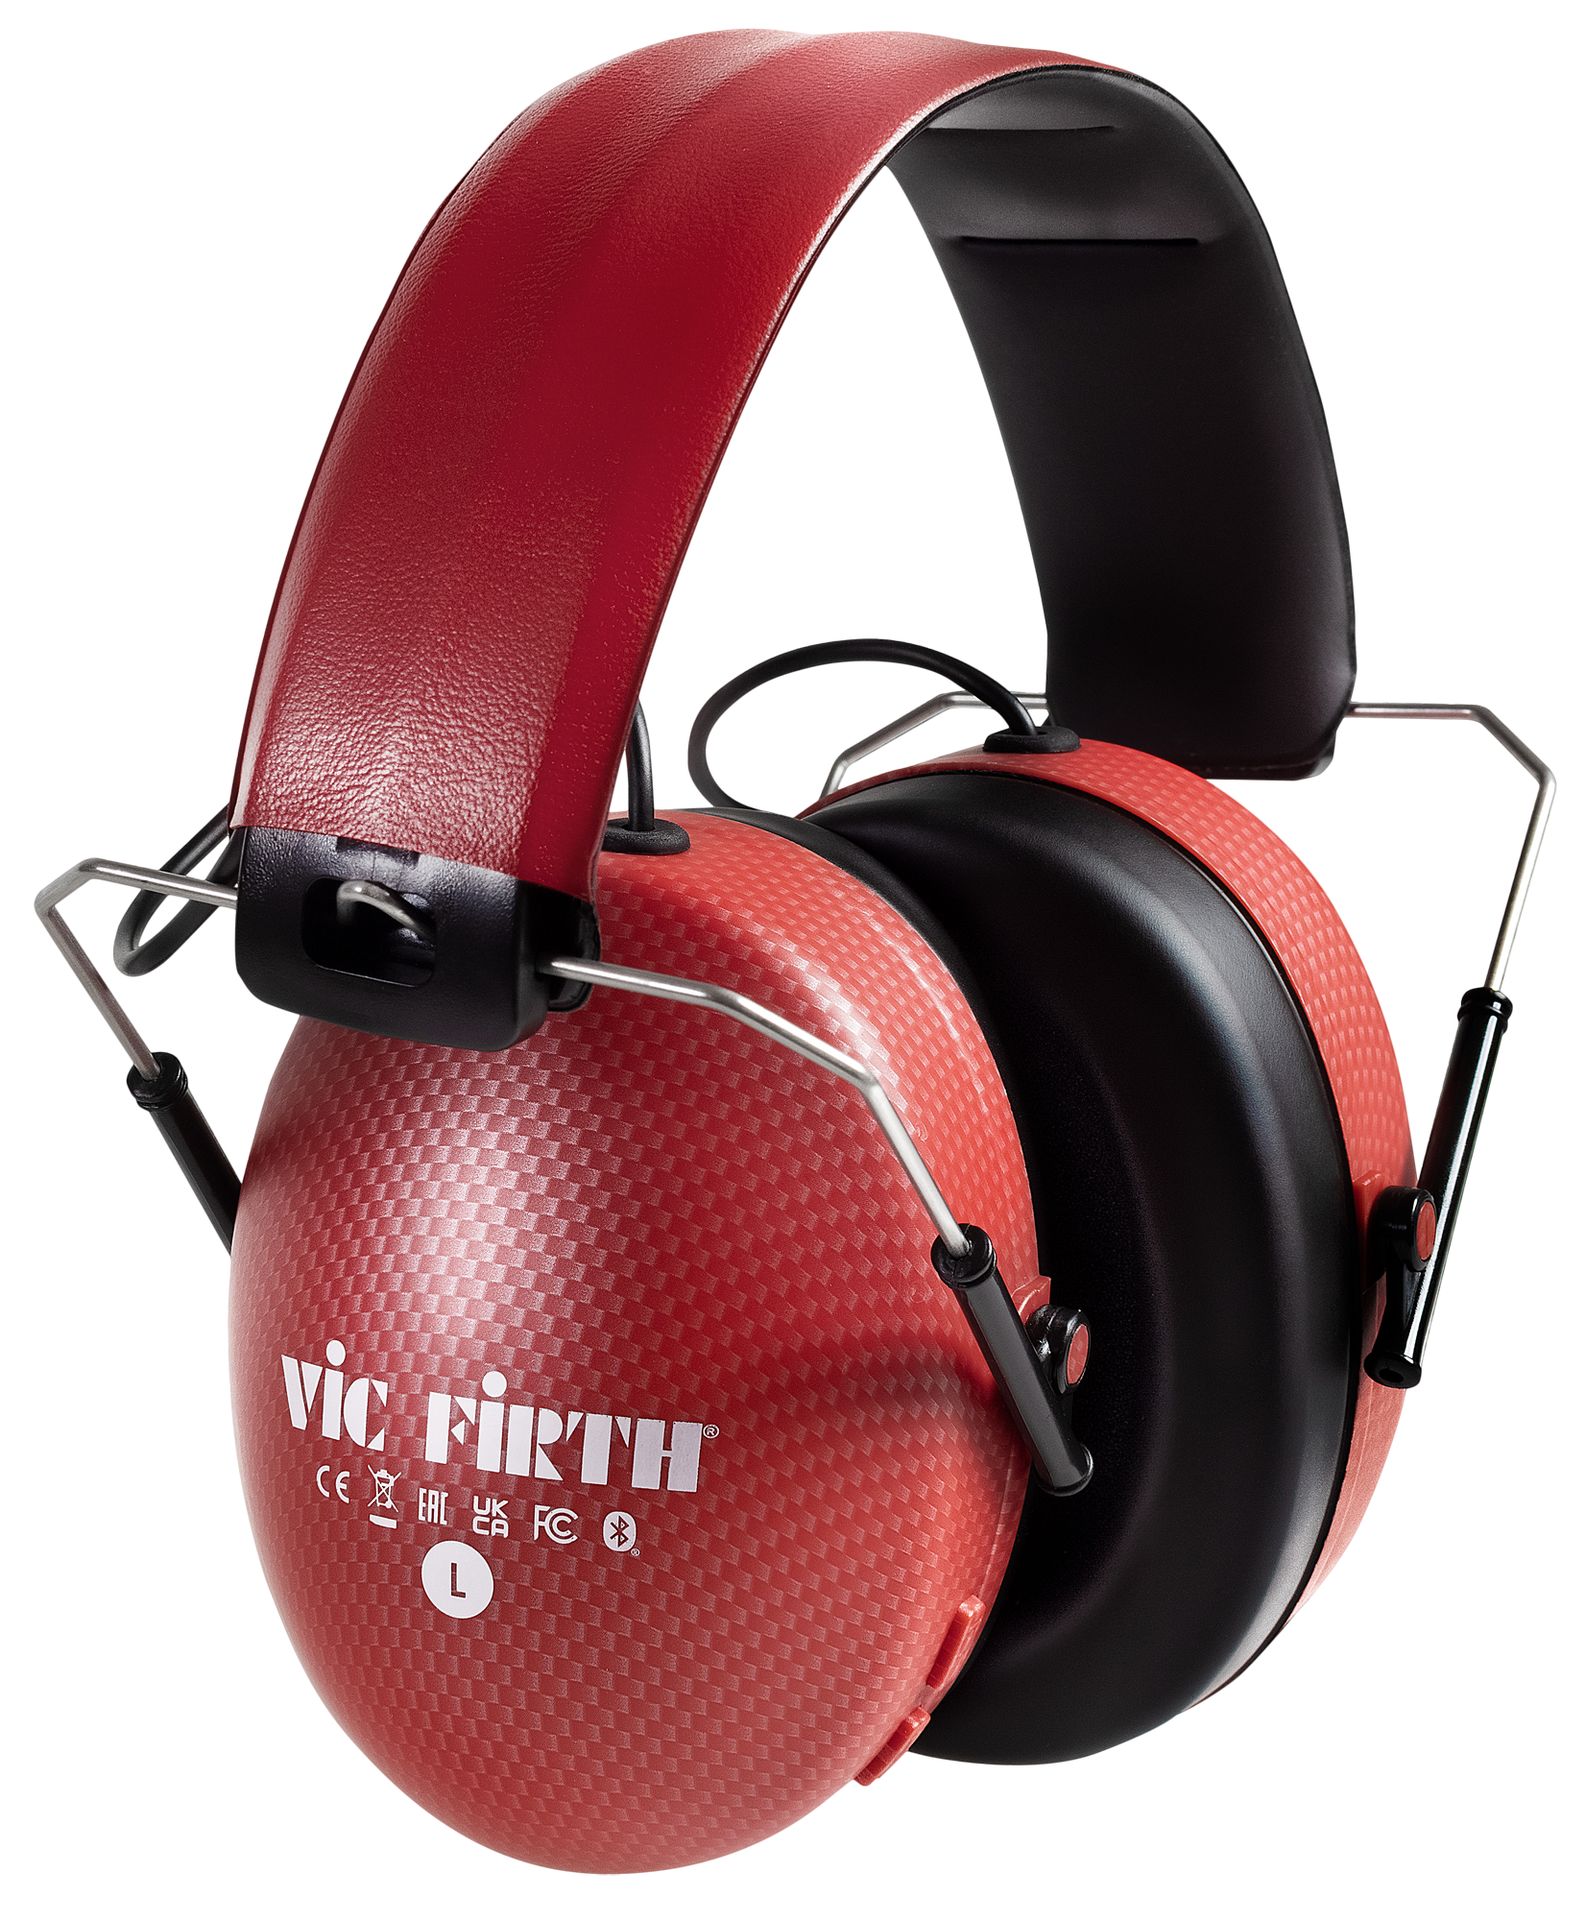 Vic Firth Bluetooth Isolation Headphones Schlagzeugkopfhörer drum headphones